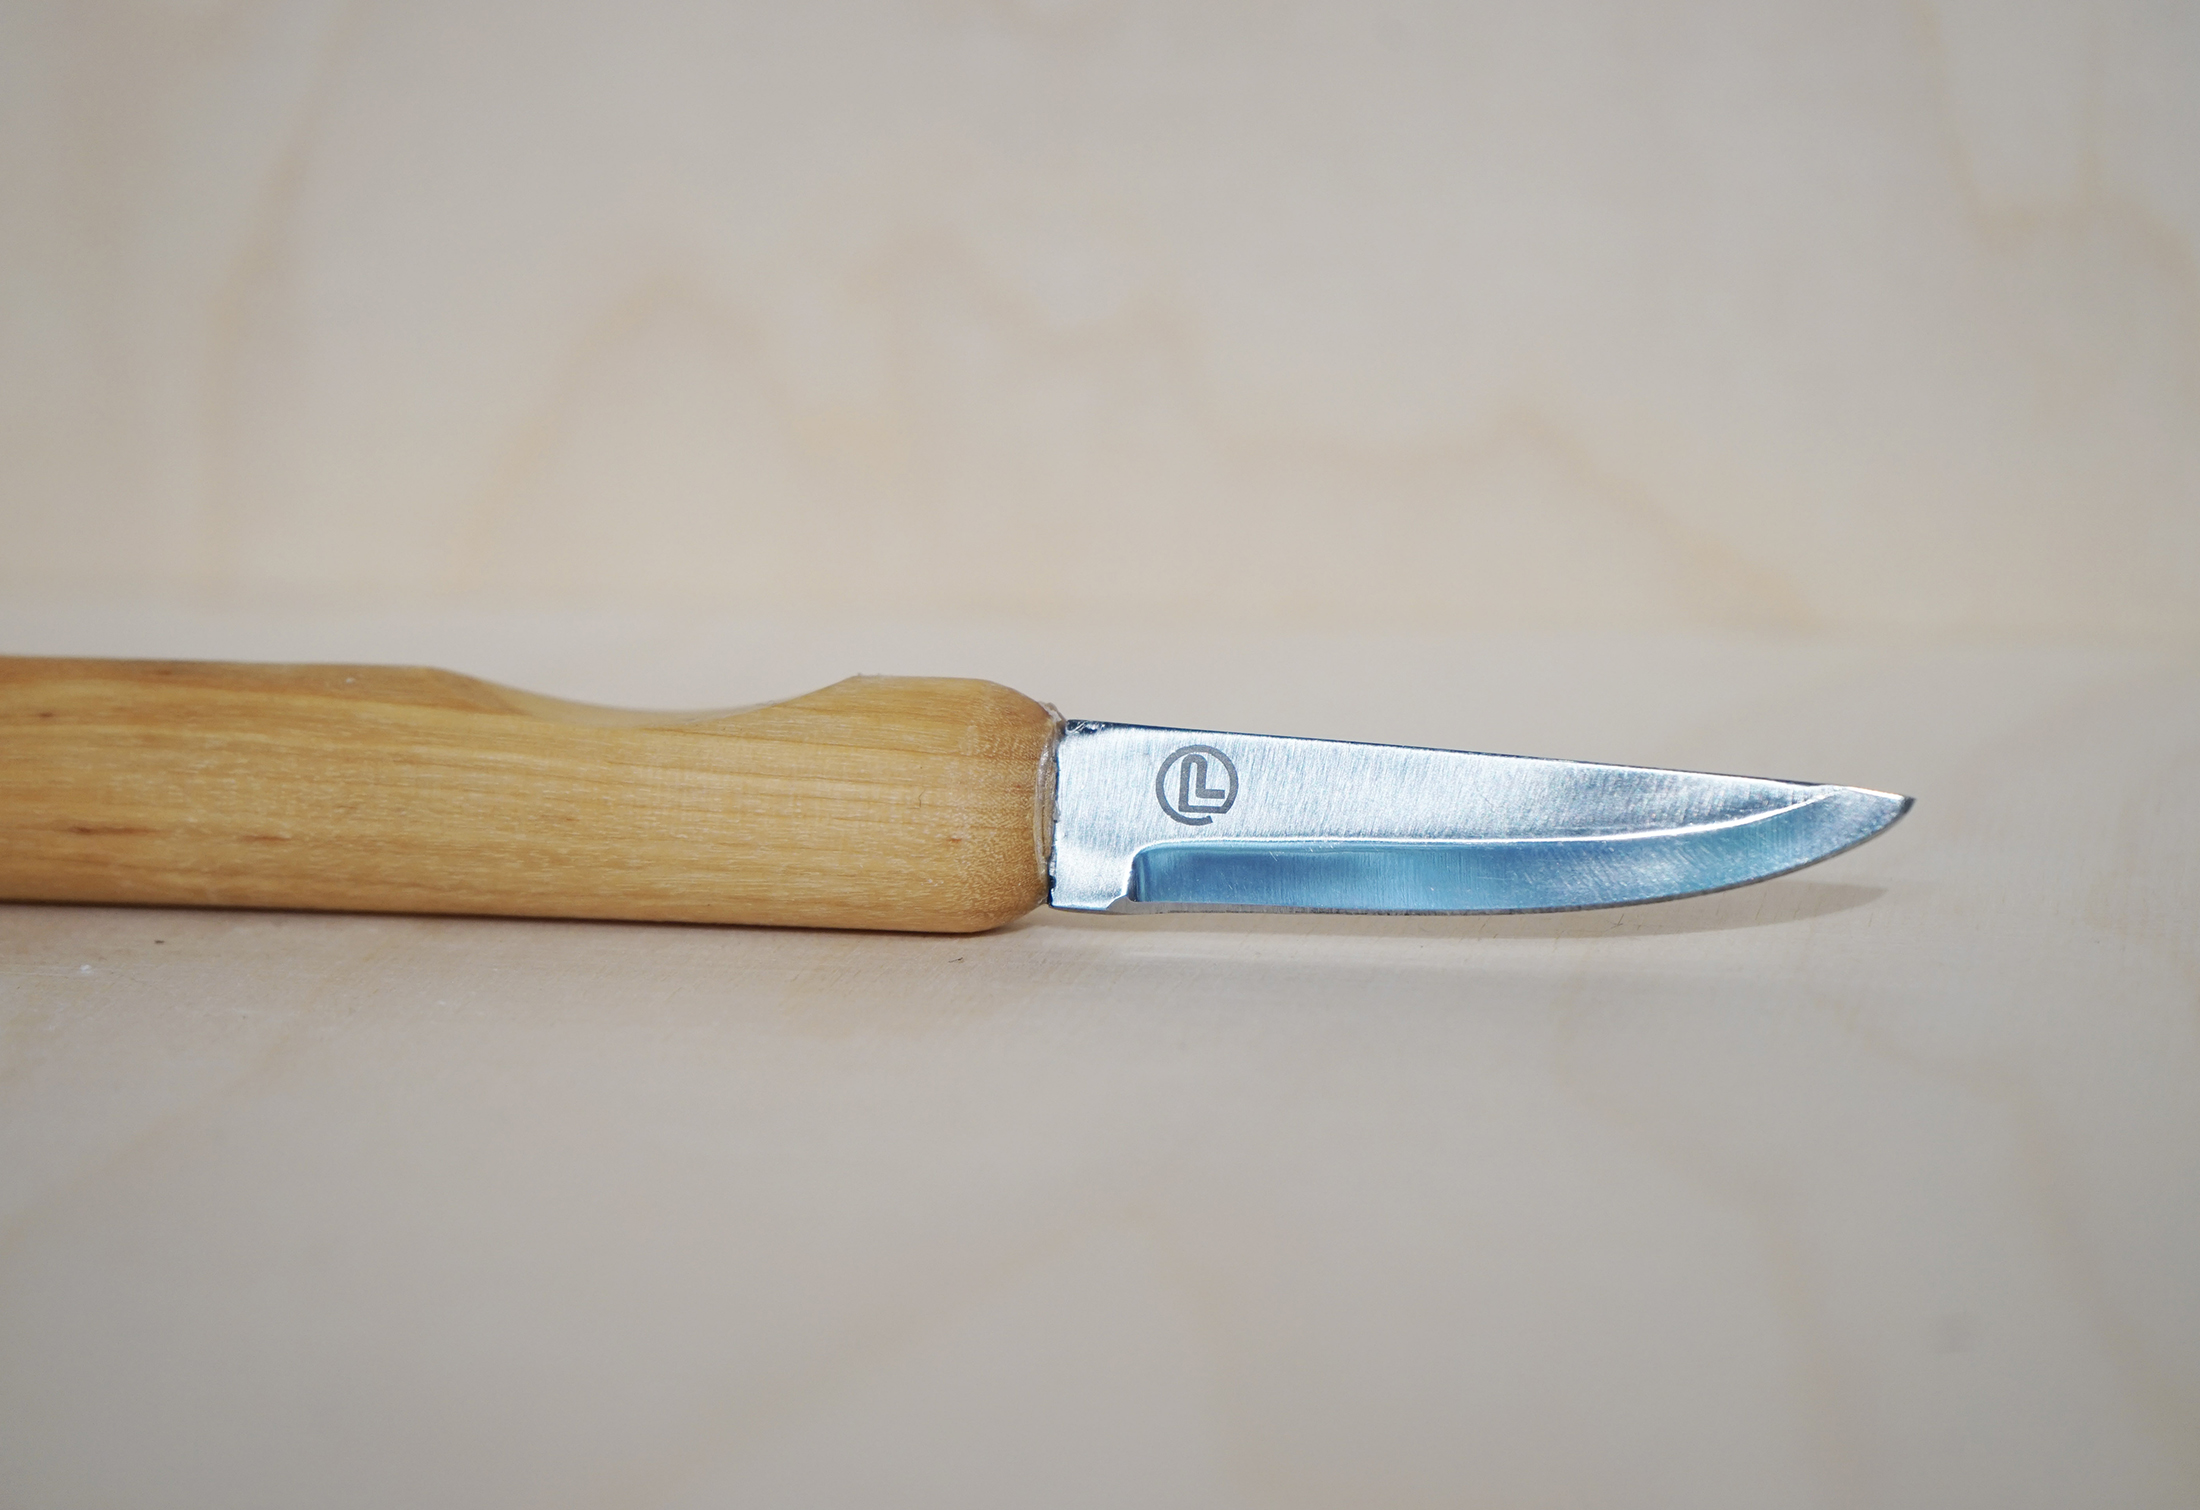 Iris hantverk svampkniv - bild på kniven